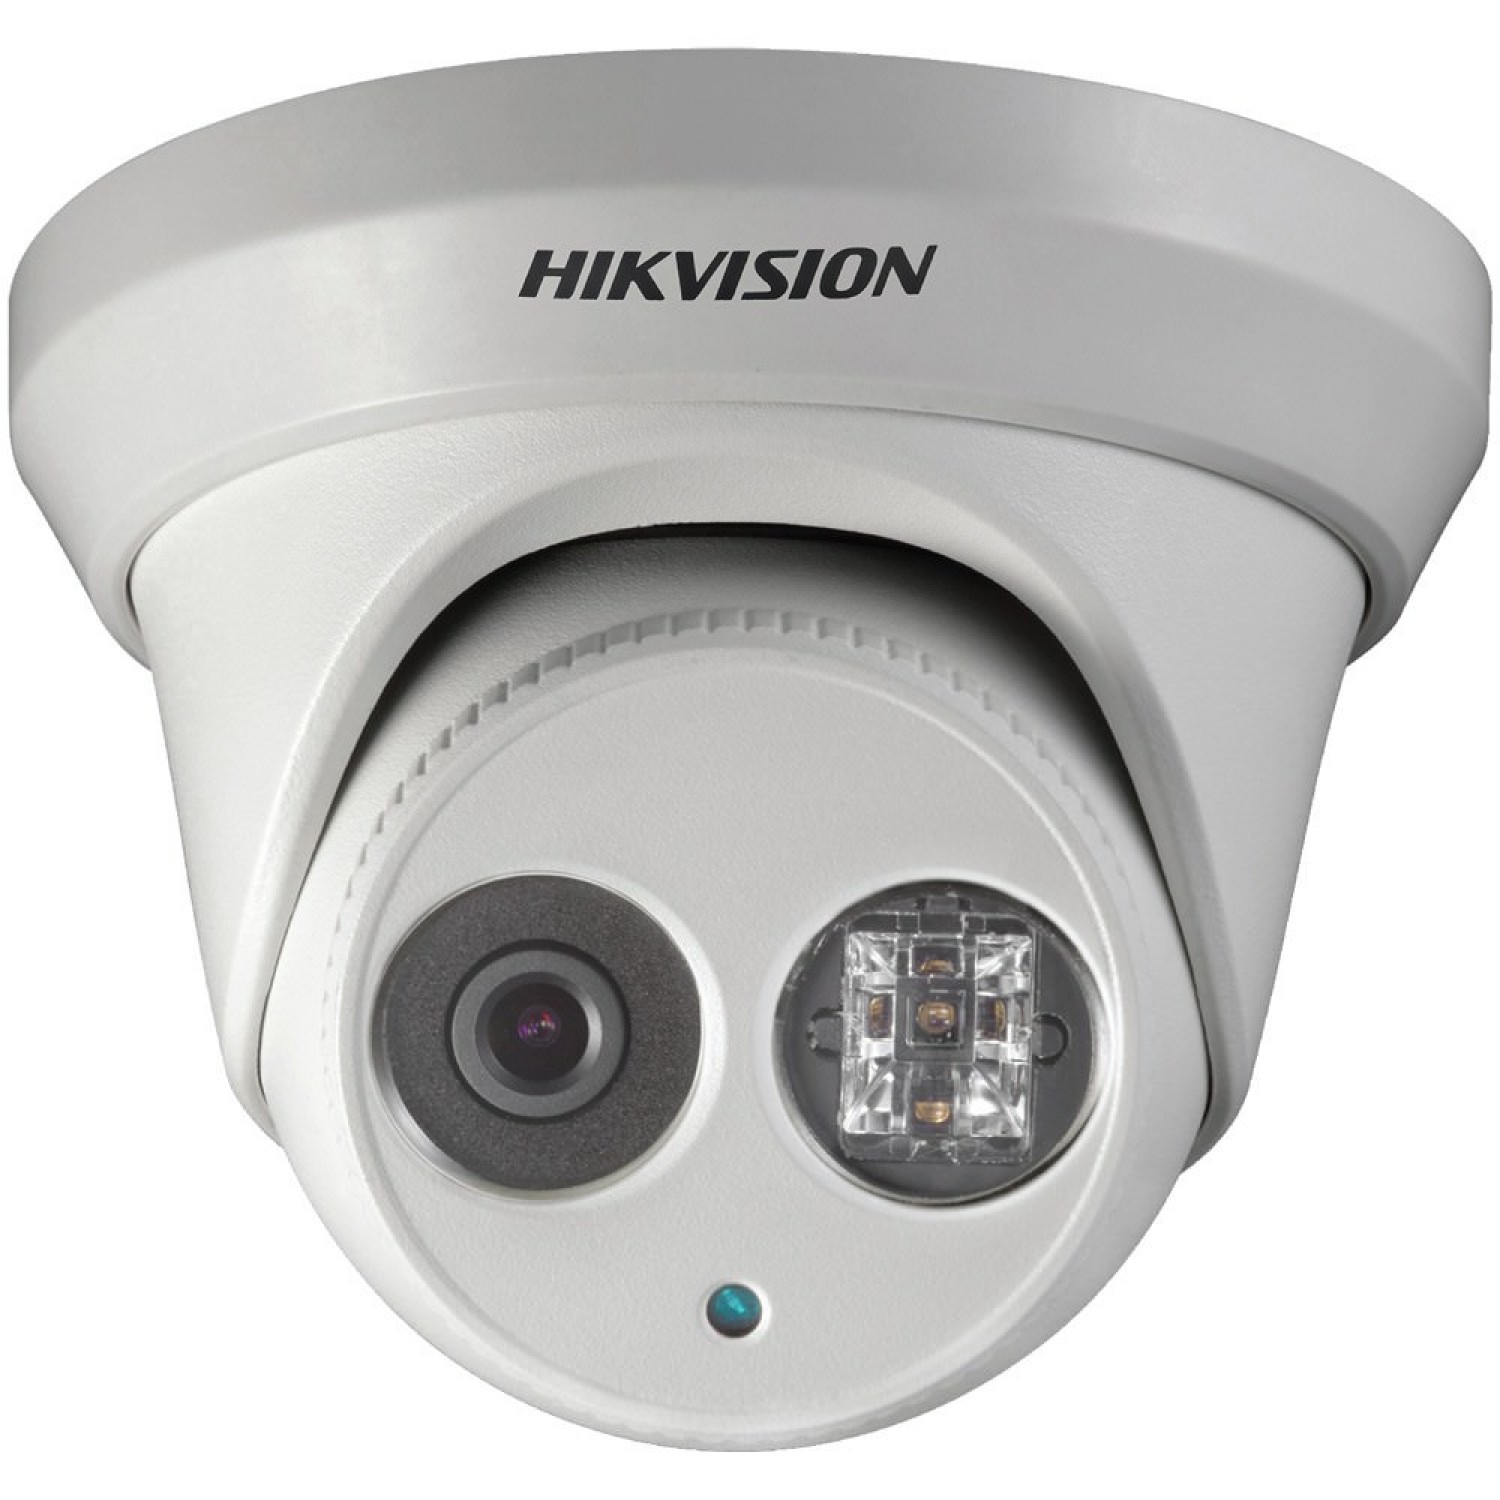 Камеры видеонаблюдения купить в спб. Hikvision DS-2cd2322wd-i. DS-2cd2442fwd-IW. Камера видеонаблюдения Hikvision DS-2cd2342wd-i. Hikvision DS-2cd2022wd-i 4мм.